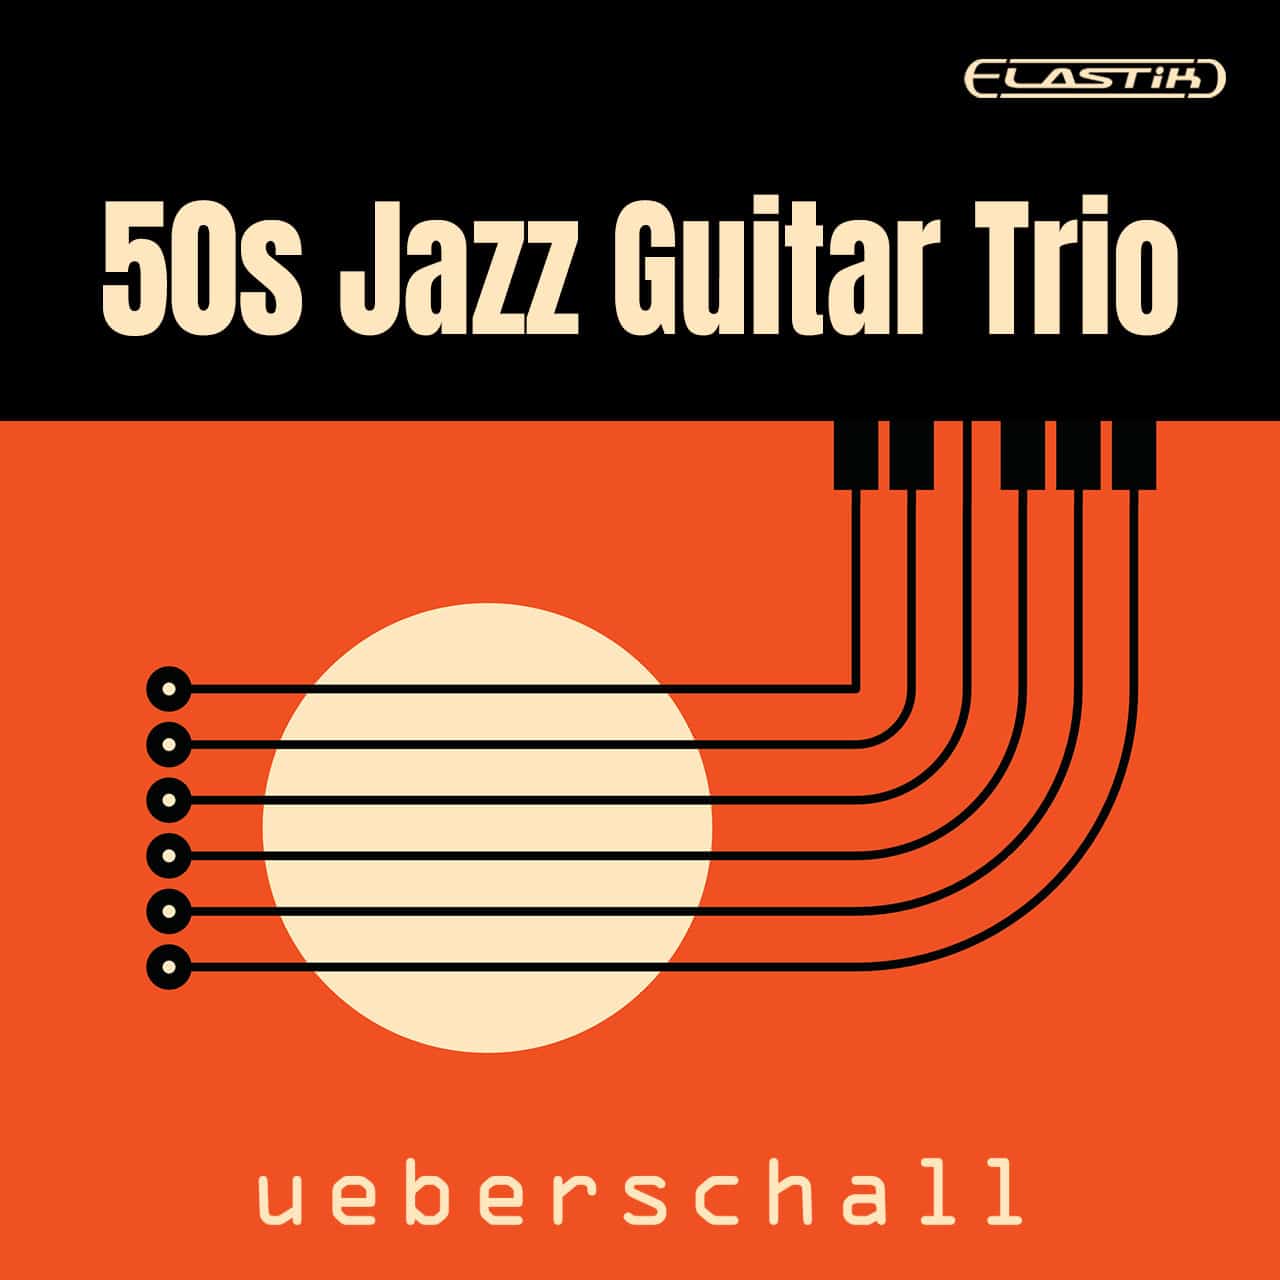 50s Jazz Guitar Trio ueberschall 1280x1280 1